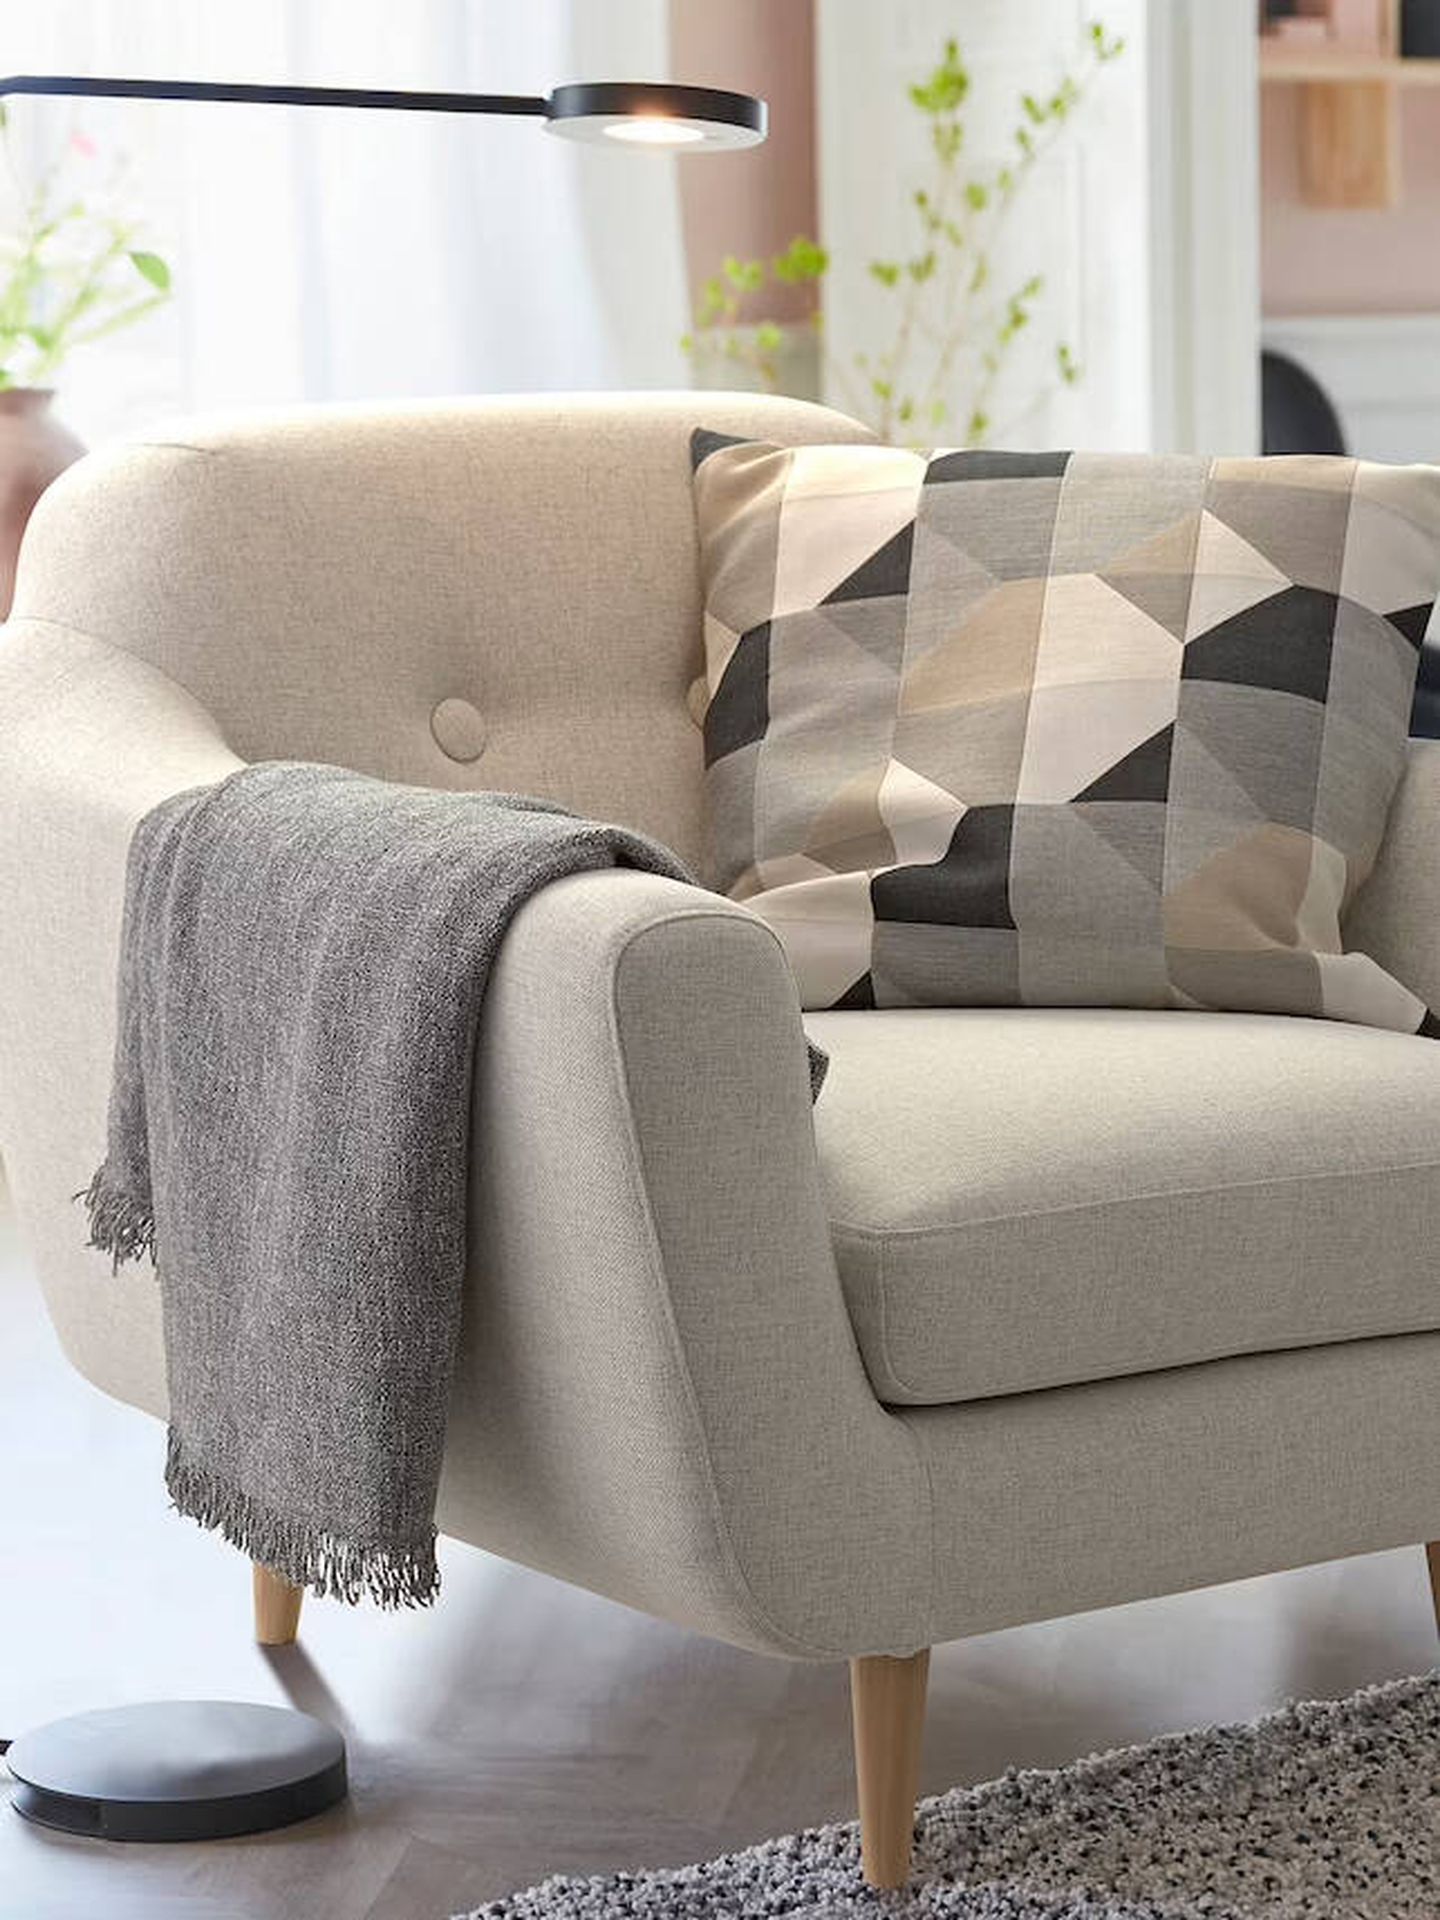 Butaca perfecta para tu salón según el estilo de decoración. (Cortesía/Ikea)